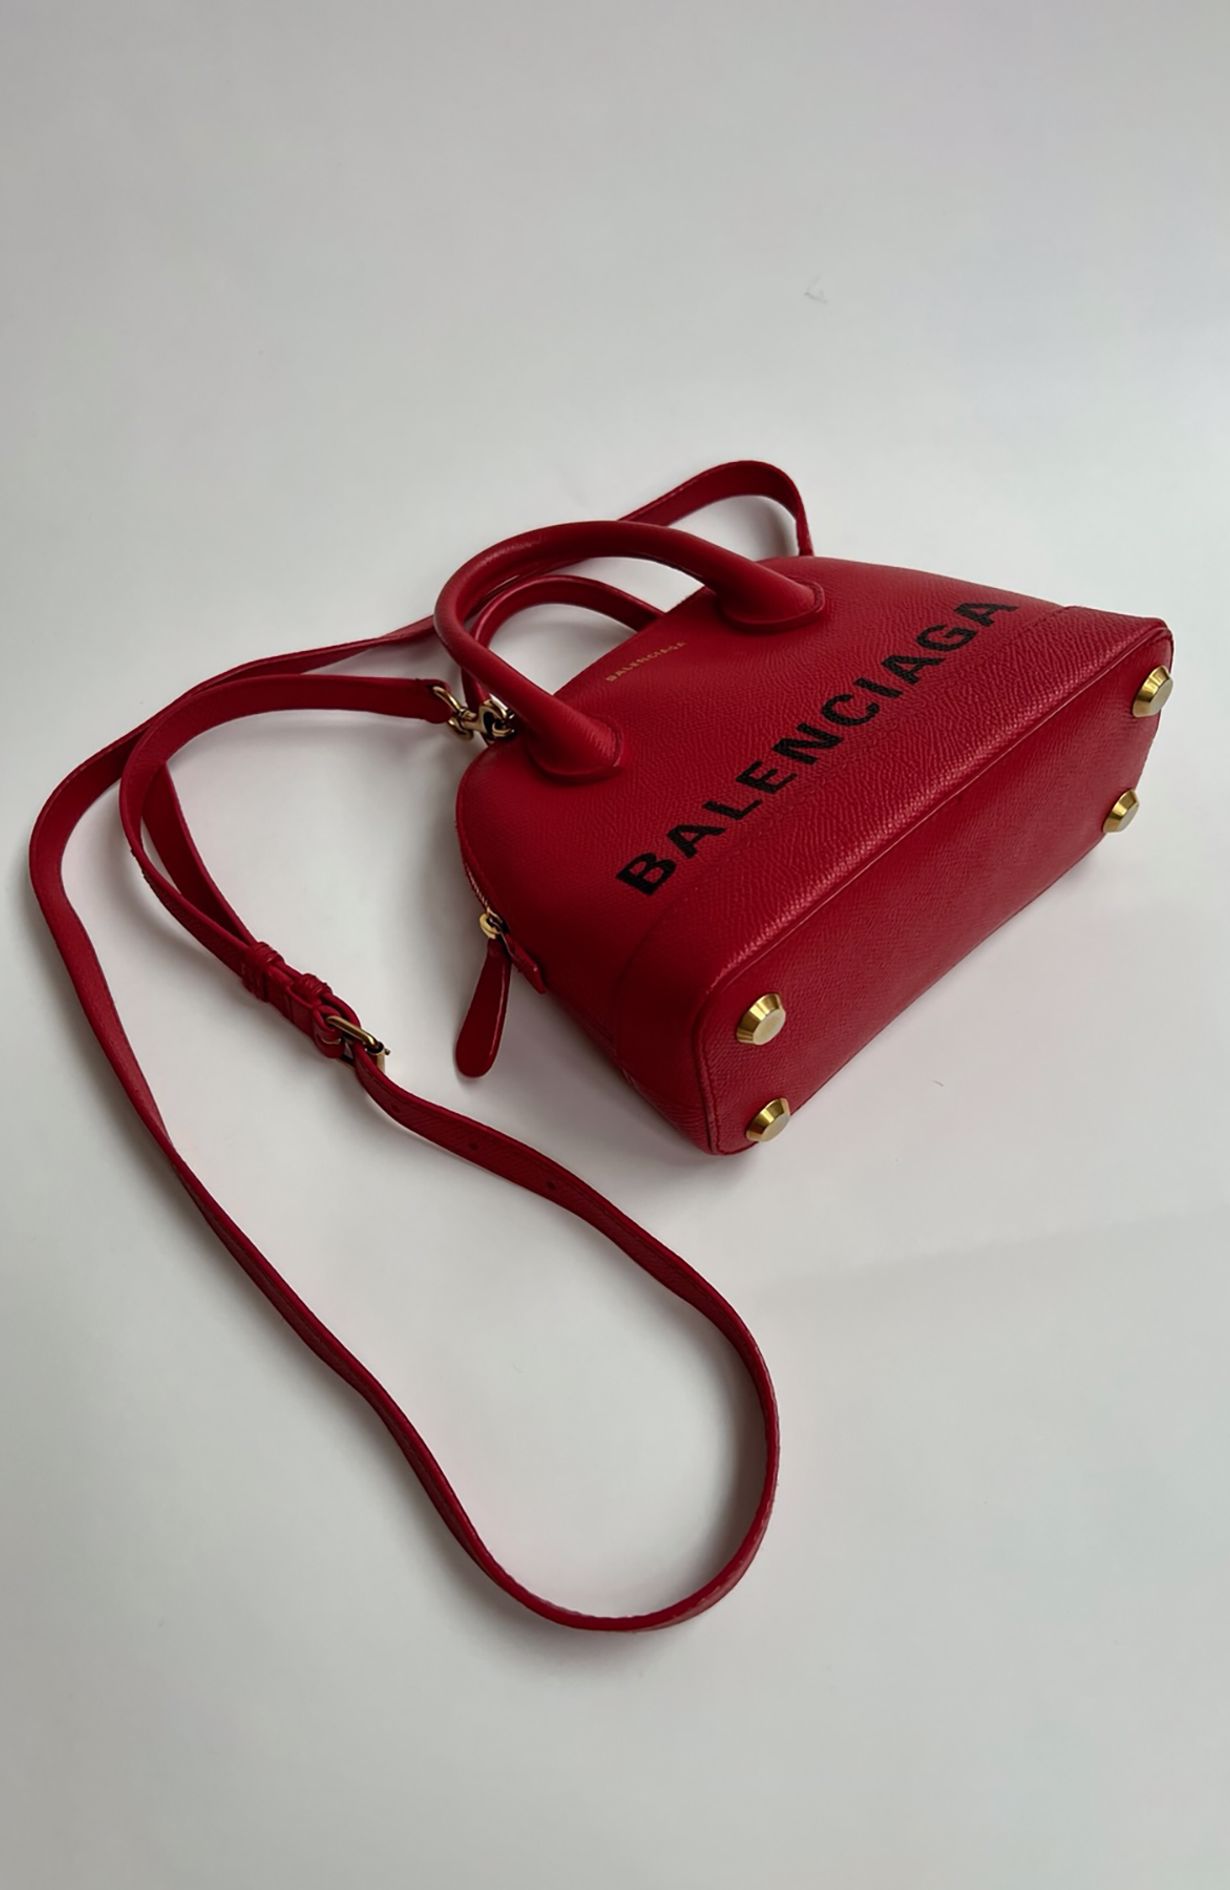 Balenciaga Bag - Red With Dustbag